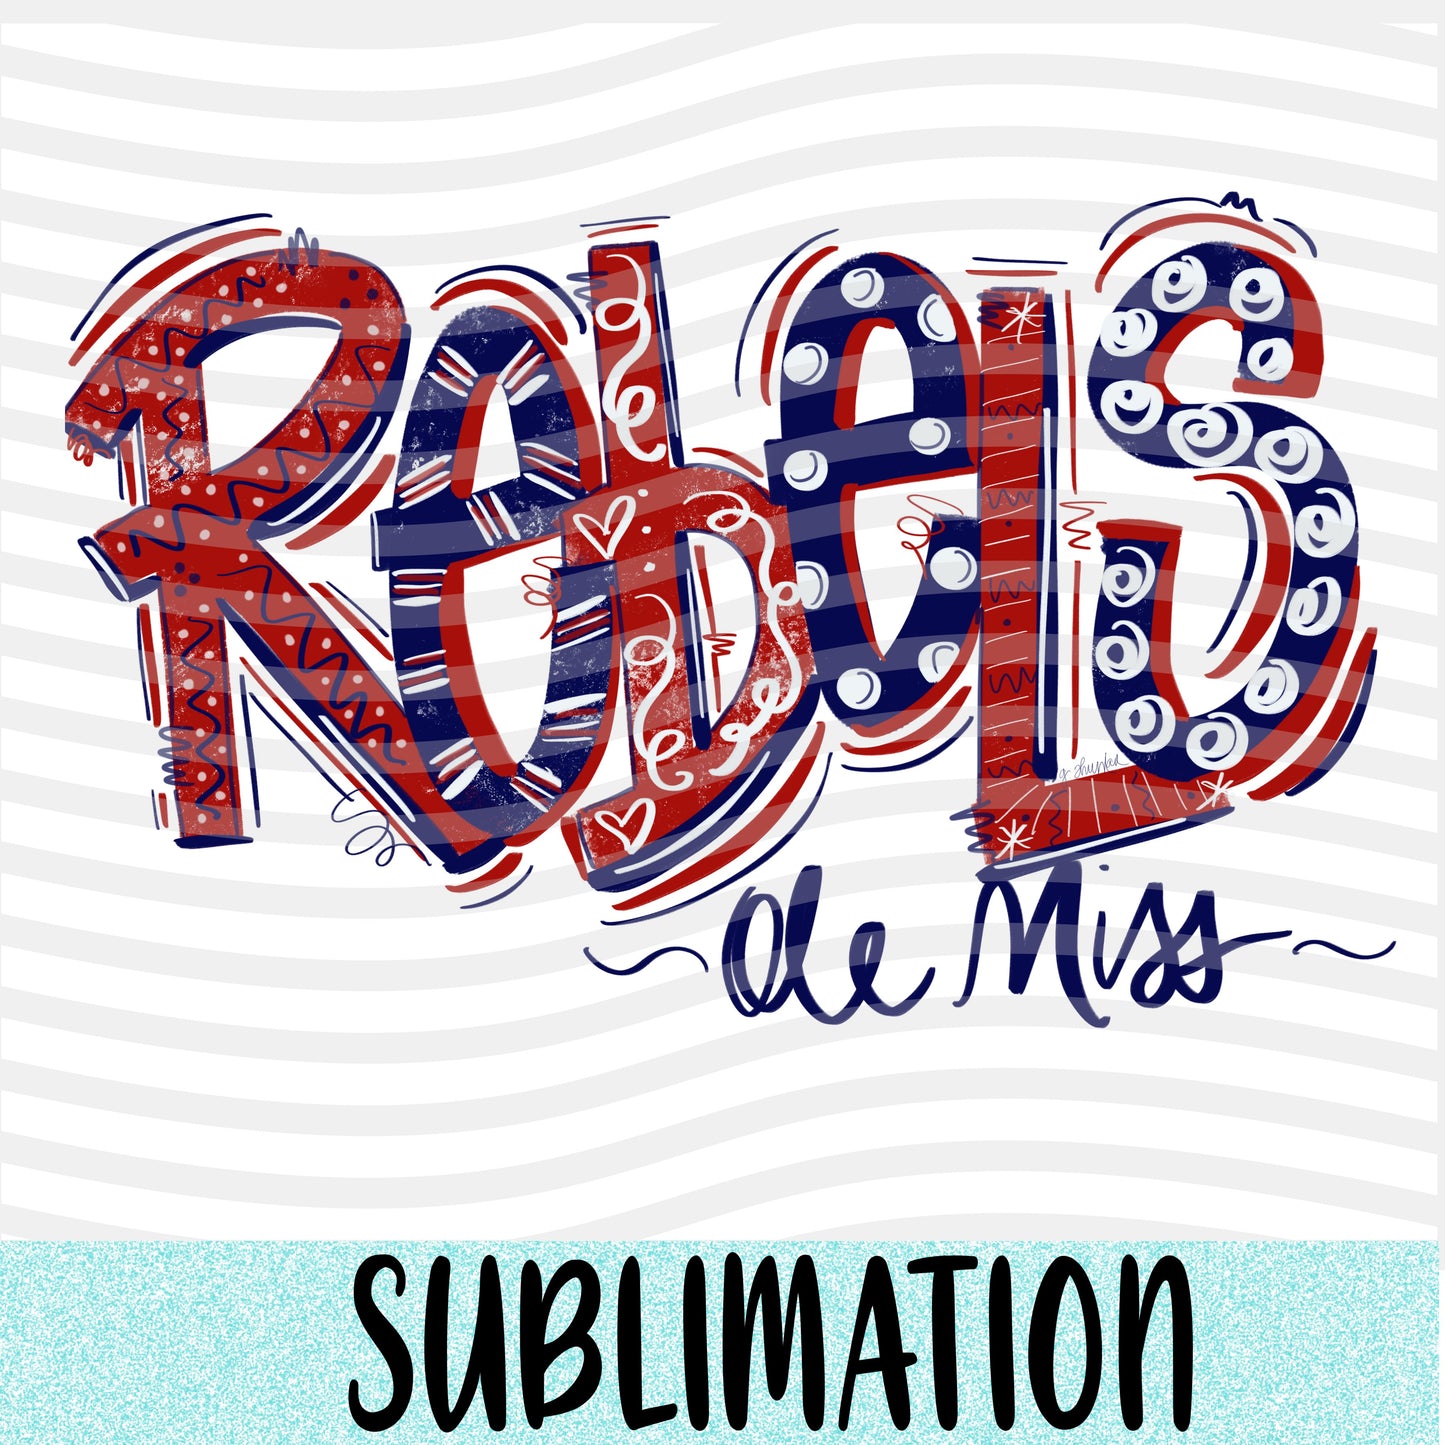 Rebels Ole Miss Sublimation